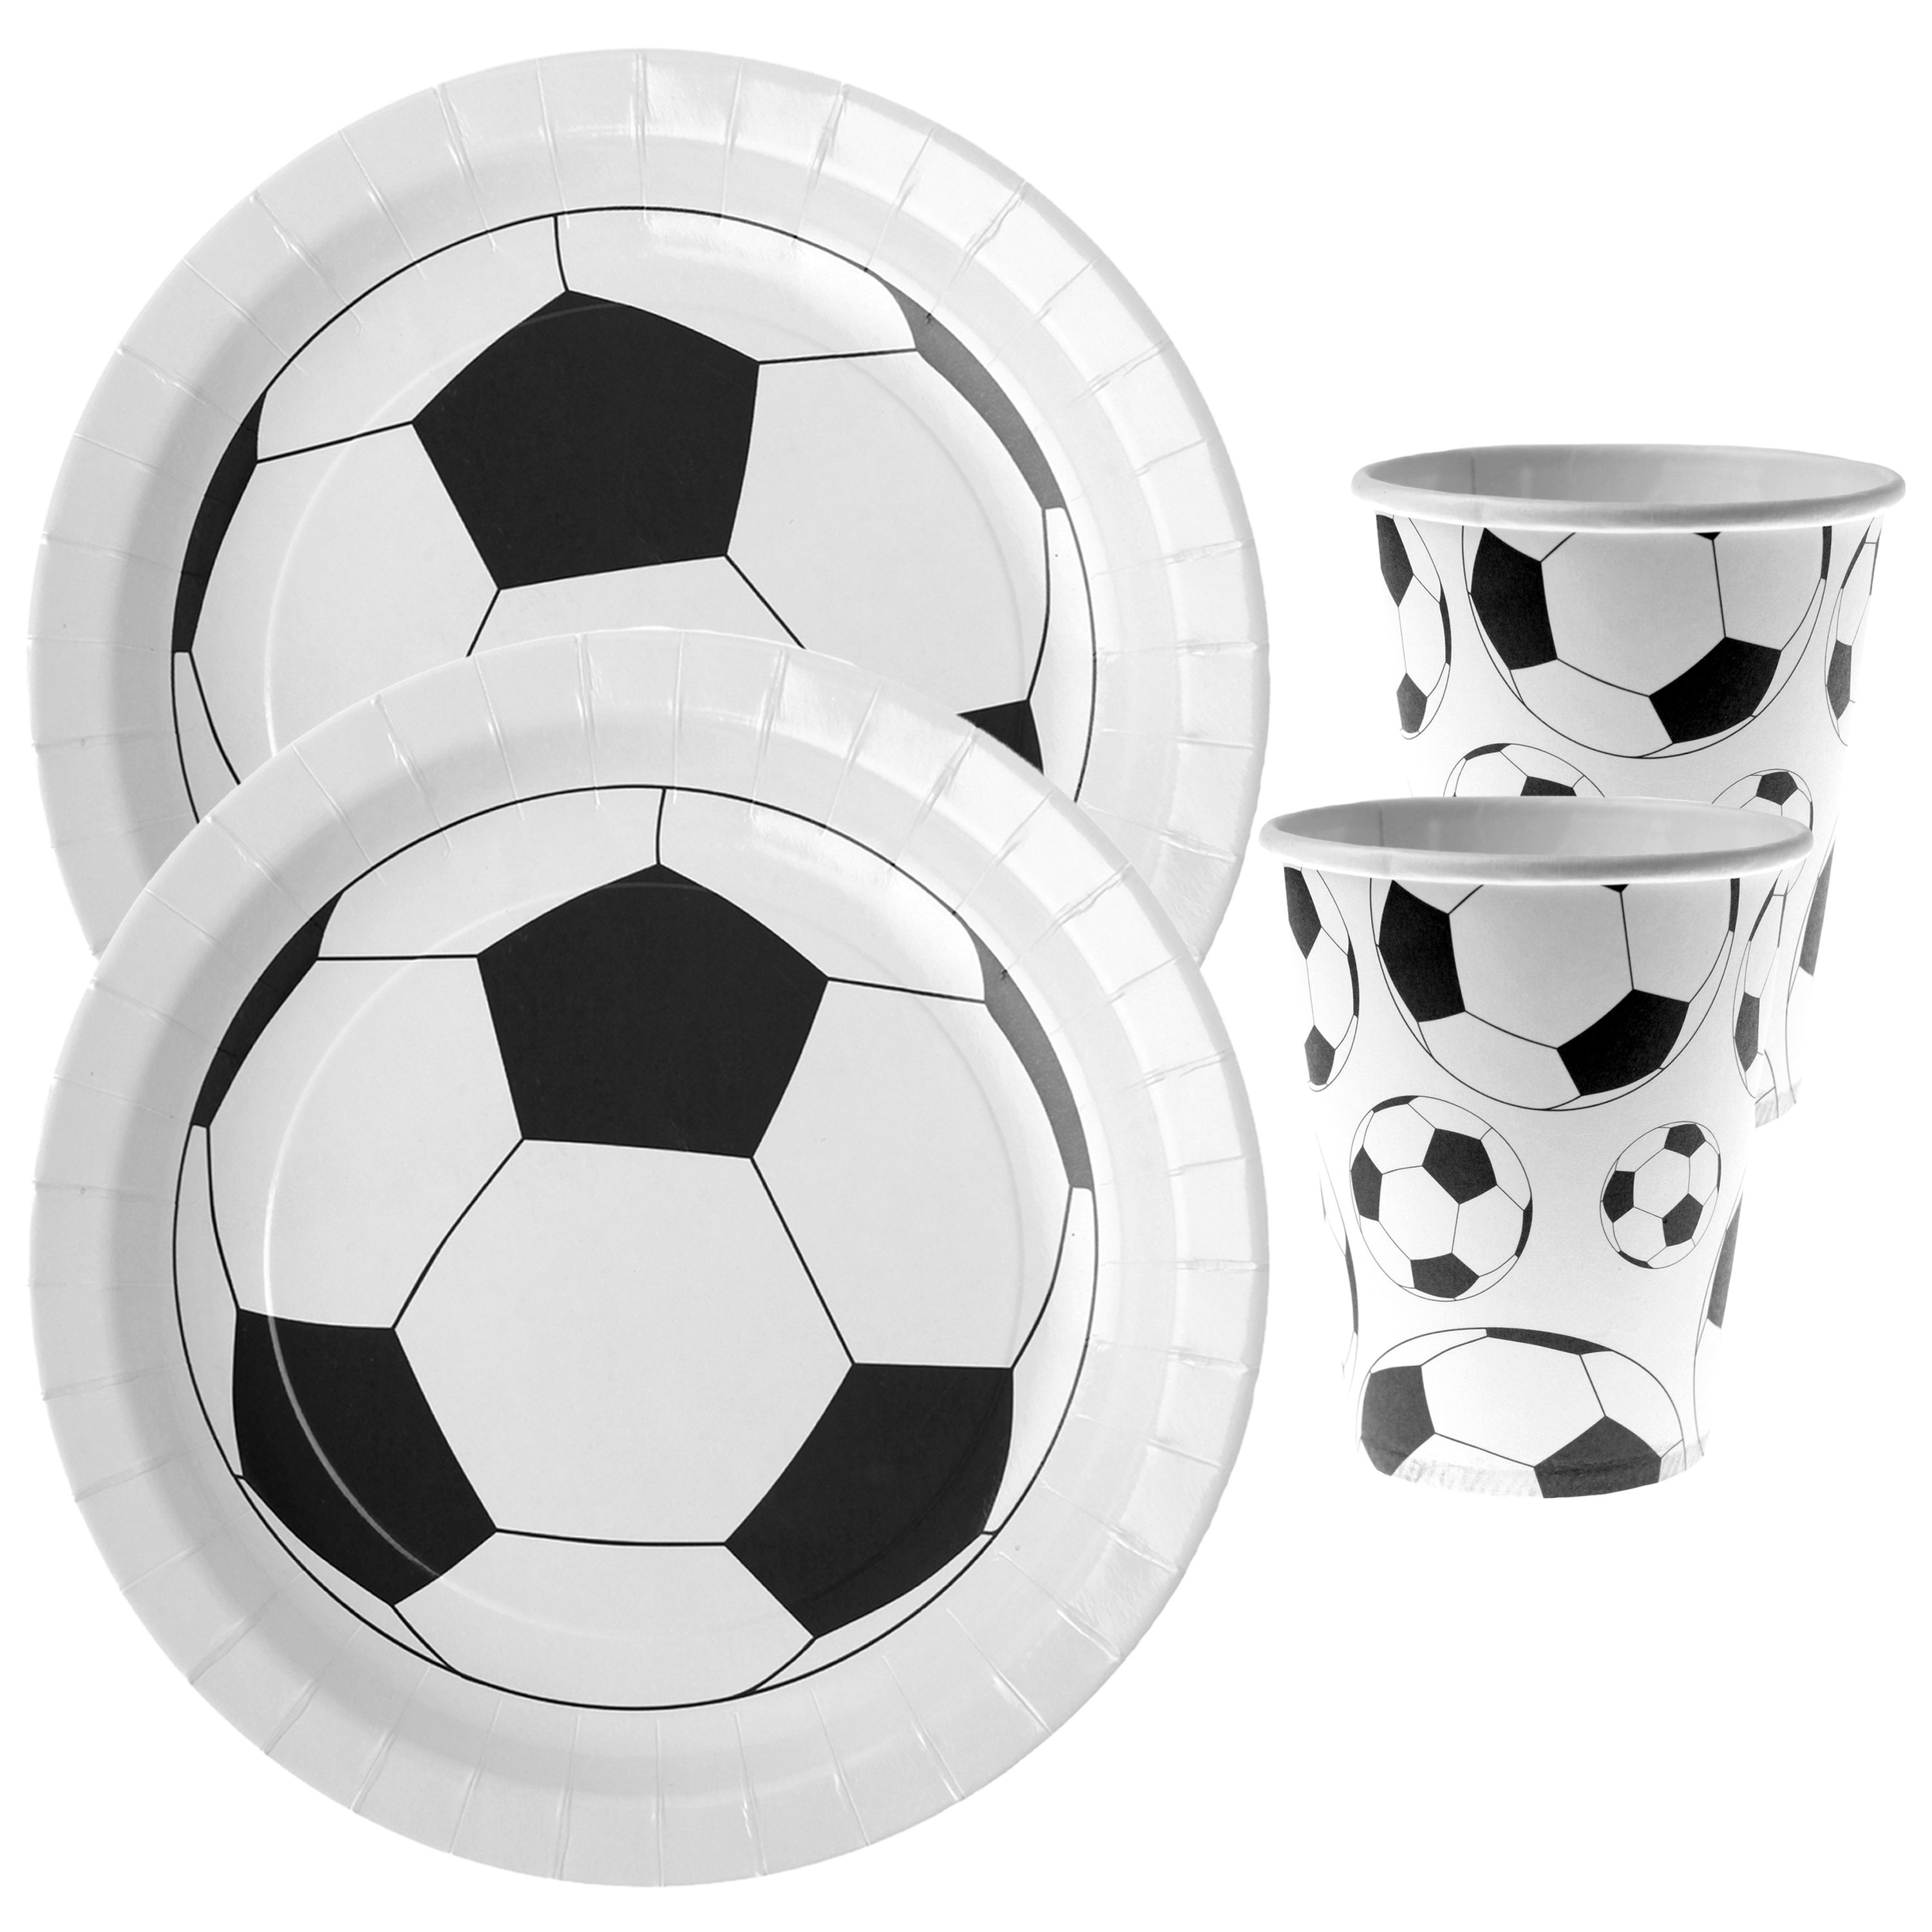 Voetbal feest wegwerp servies set 10x bordjes-10x bekers wit-zwart